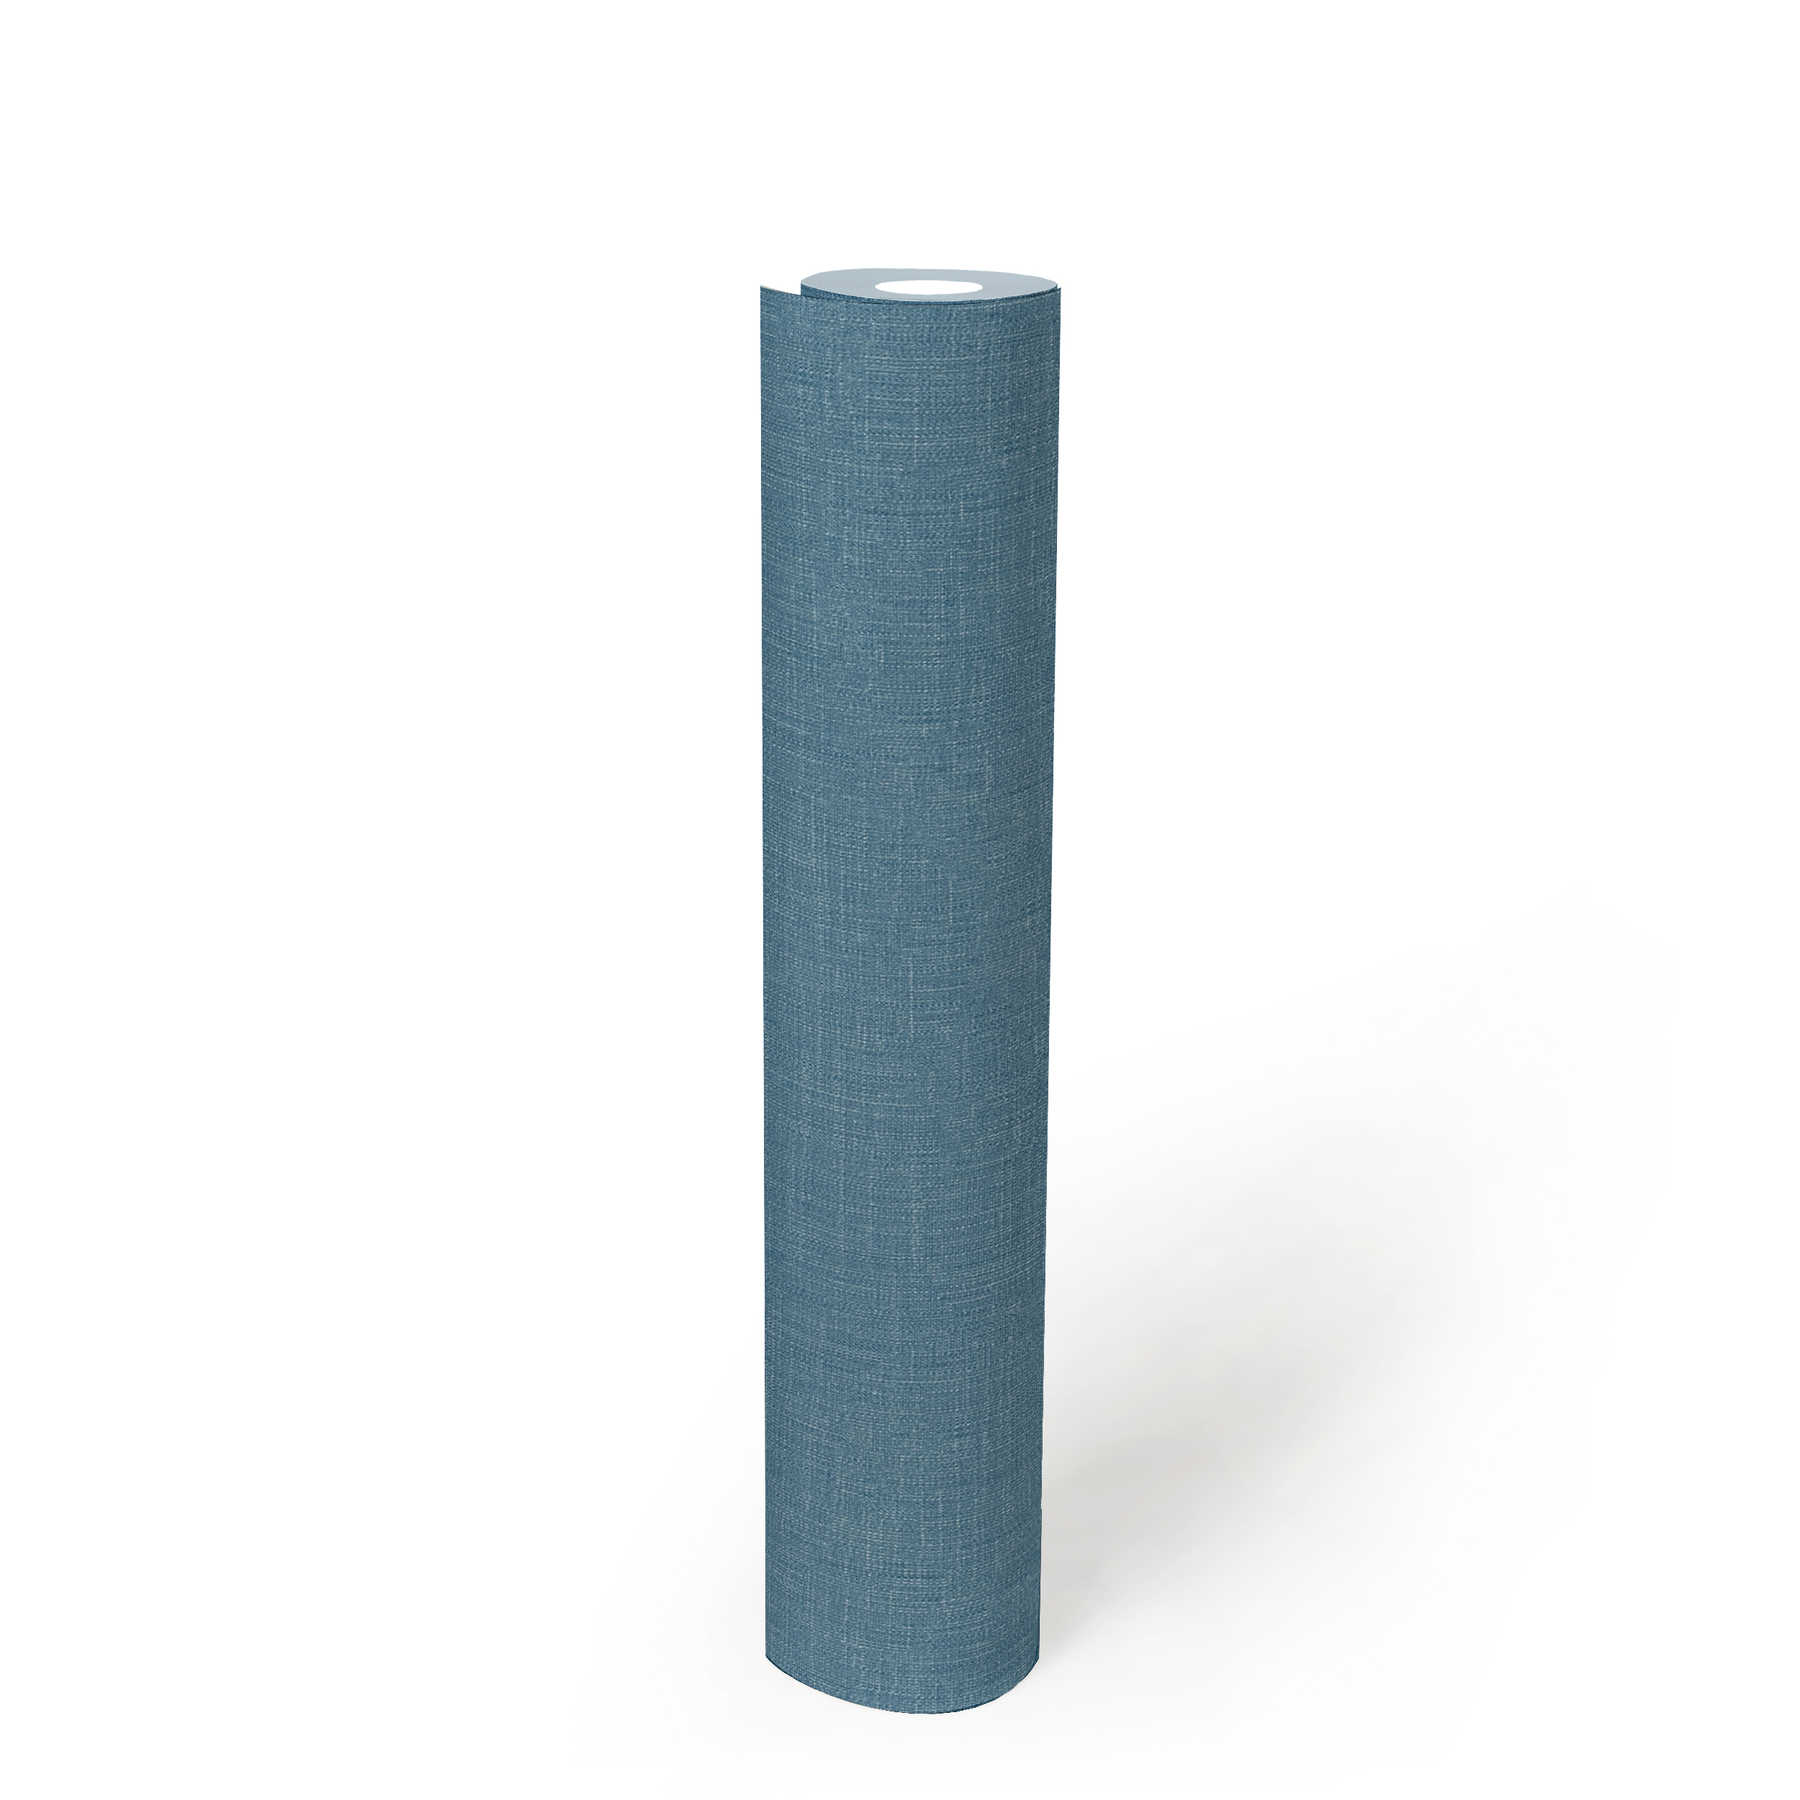             Papel pintado azul petróleo con diseño textil moteado de aspecto escandinavo
        